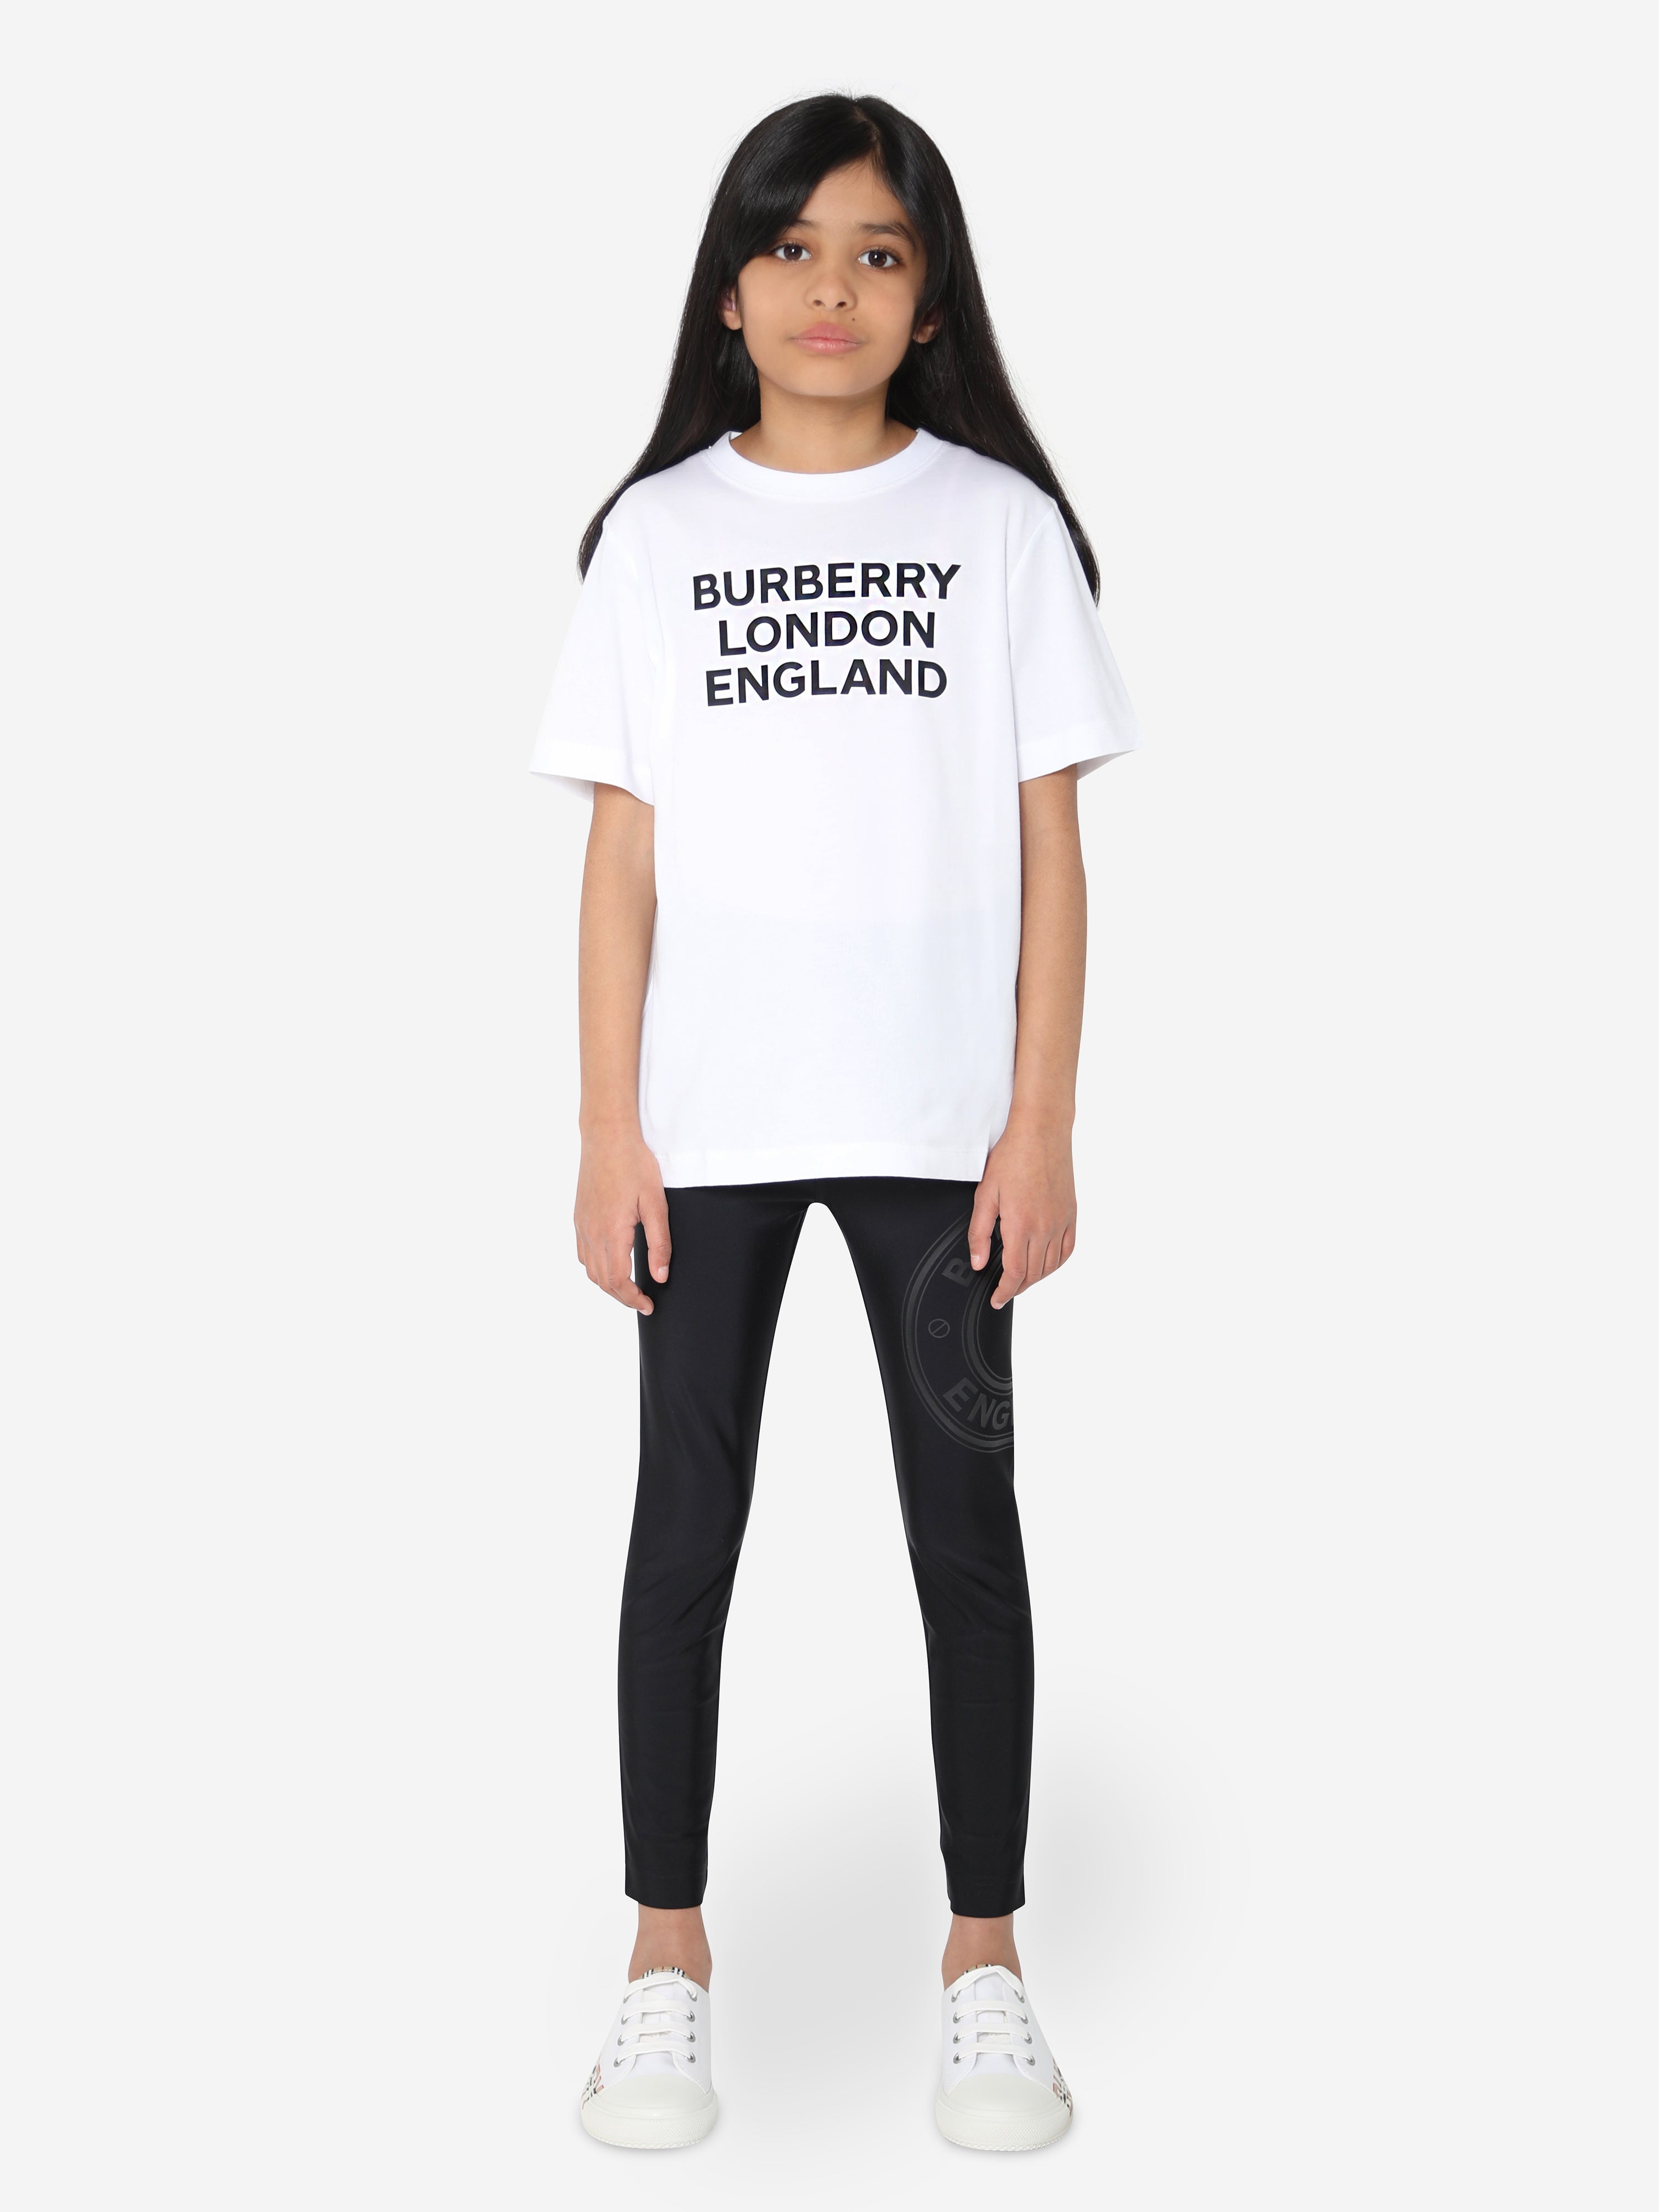 新品 BURBERRY LONDON ENGLAND キッズ Tシャツ 10 - トップス